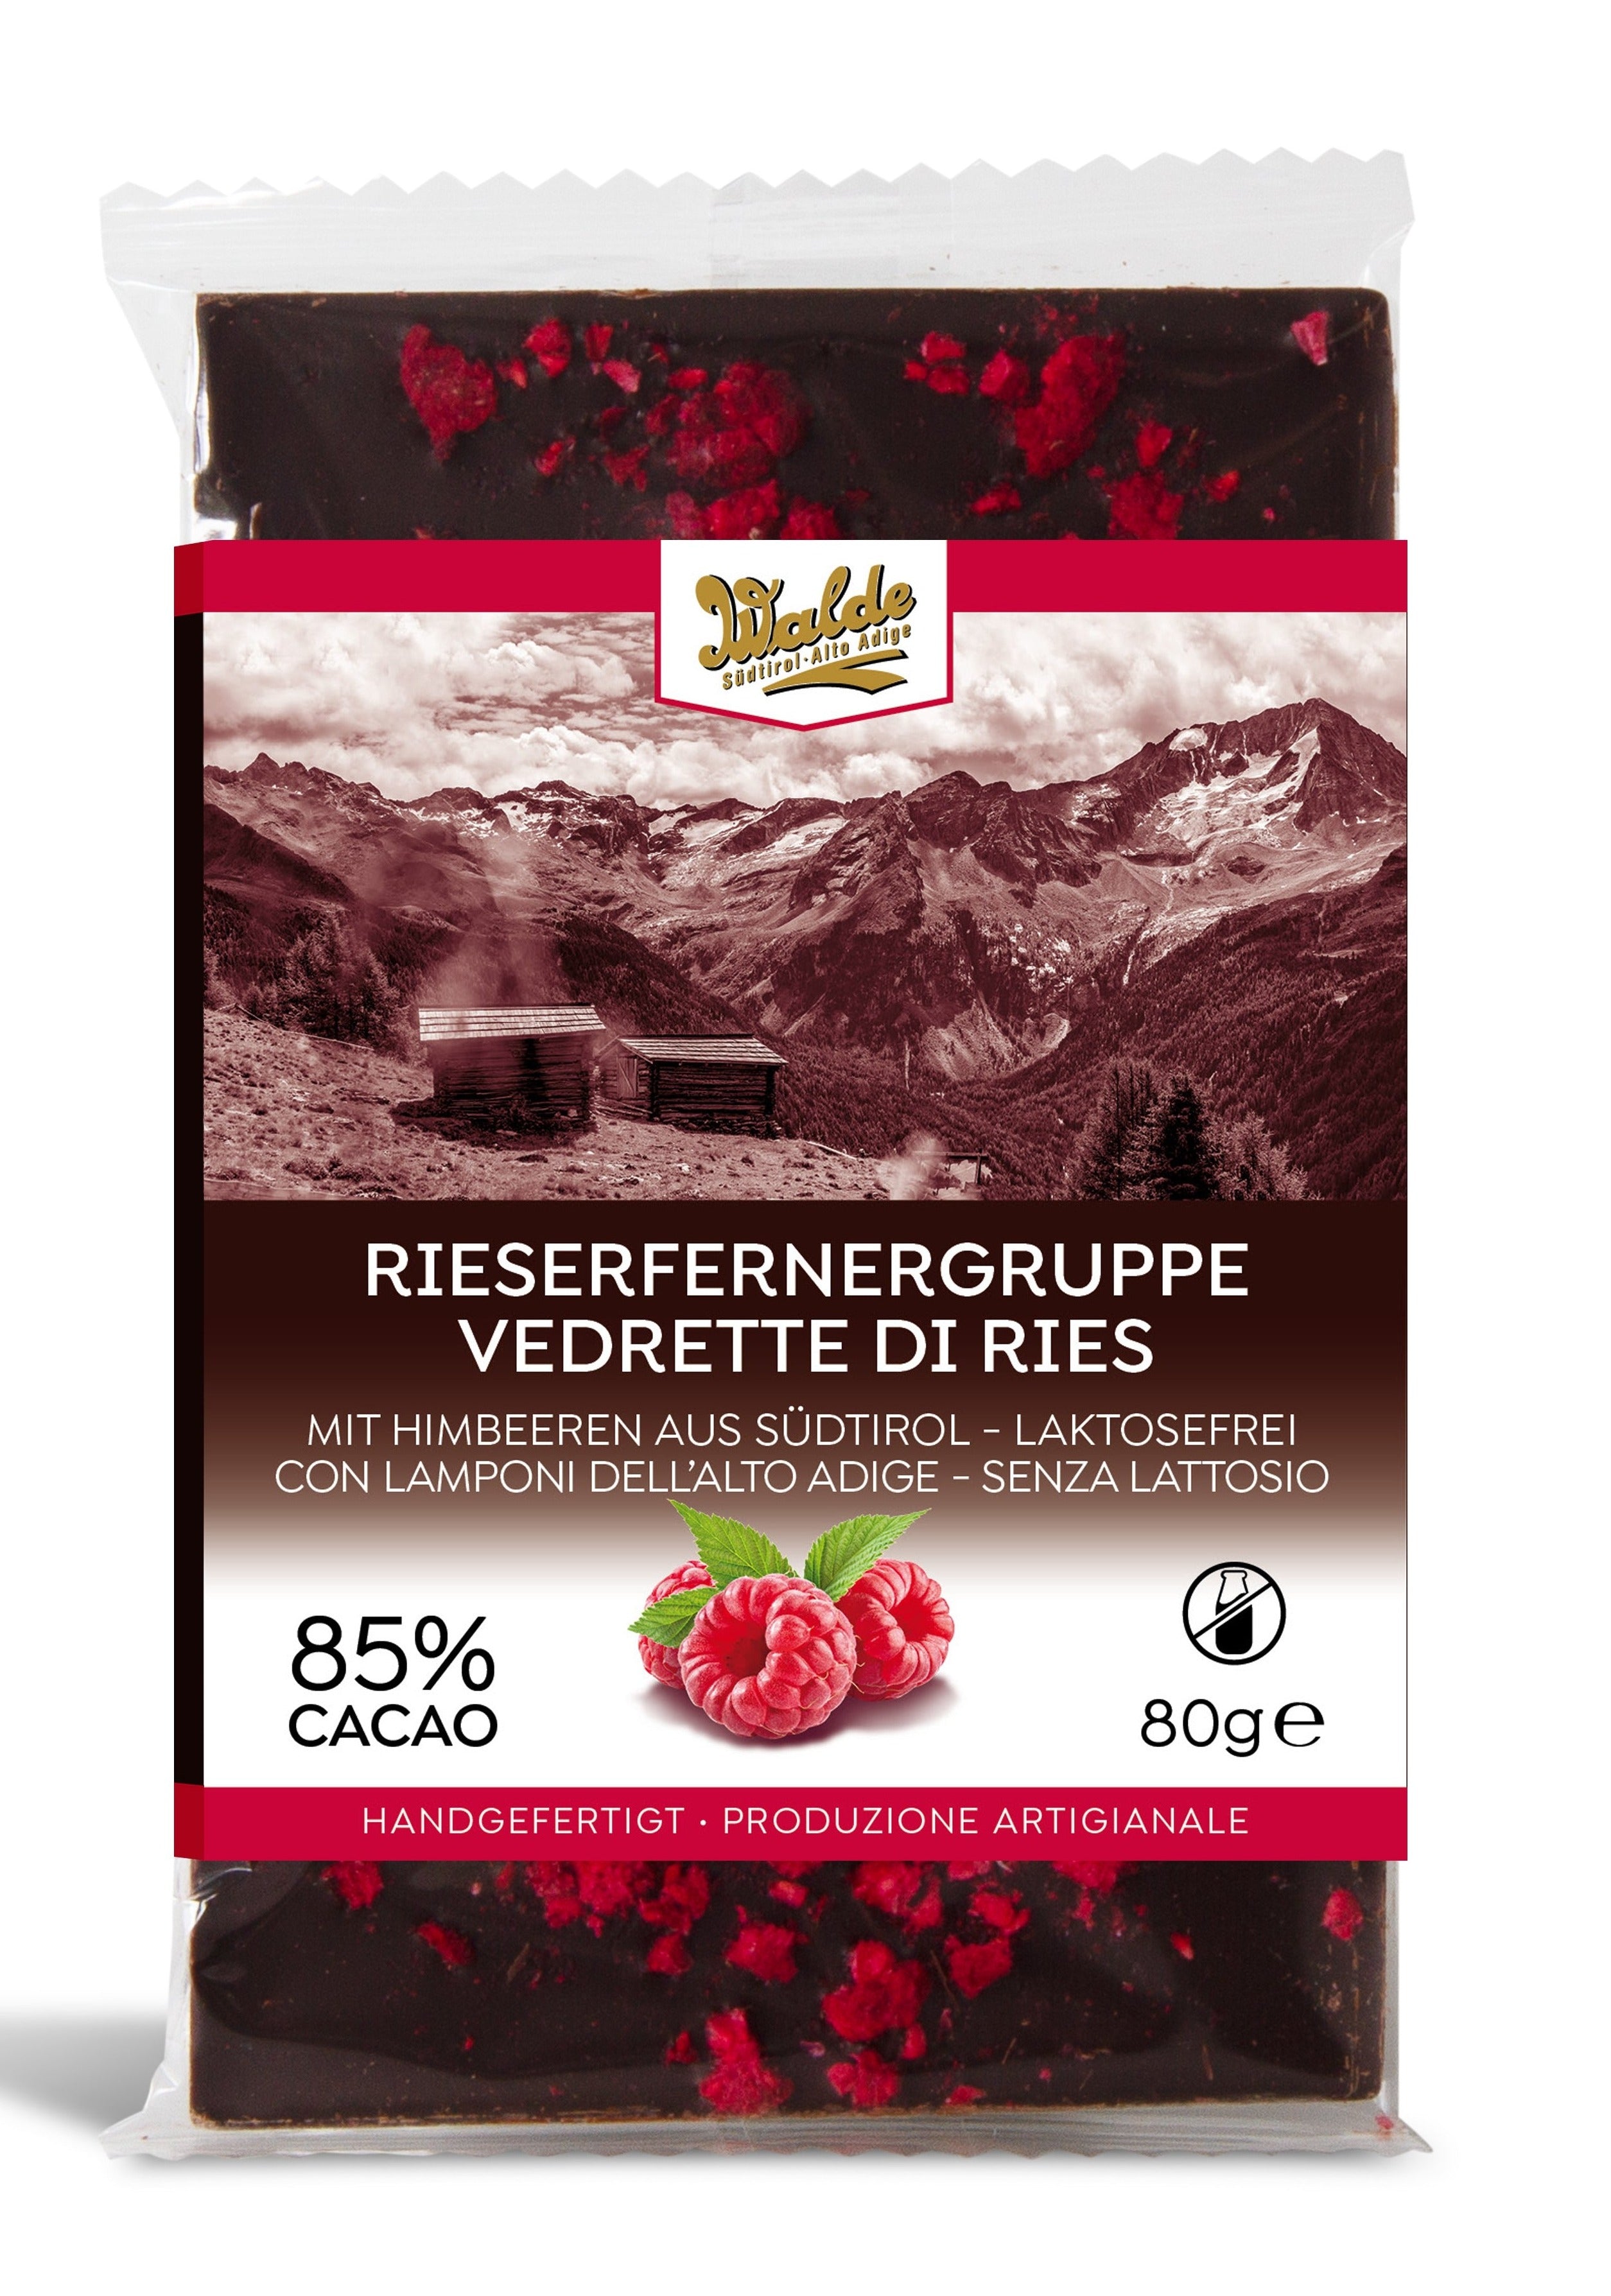 RIESERFERNERGRUPPE - Zartherbe Schokolade (85%) mit Himbeeren